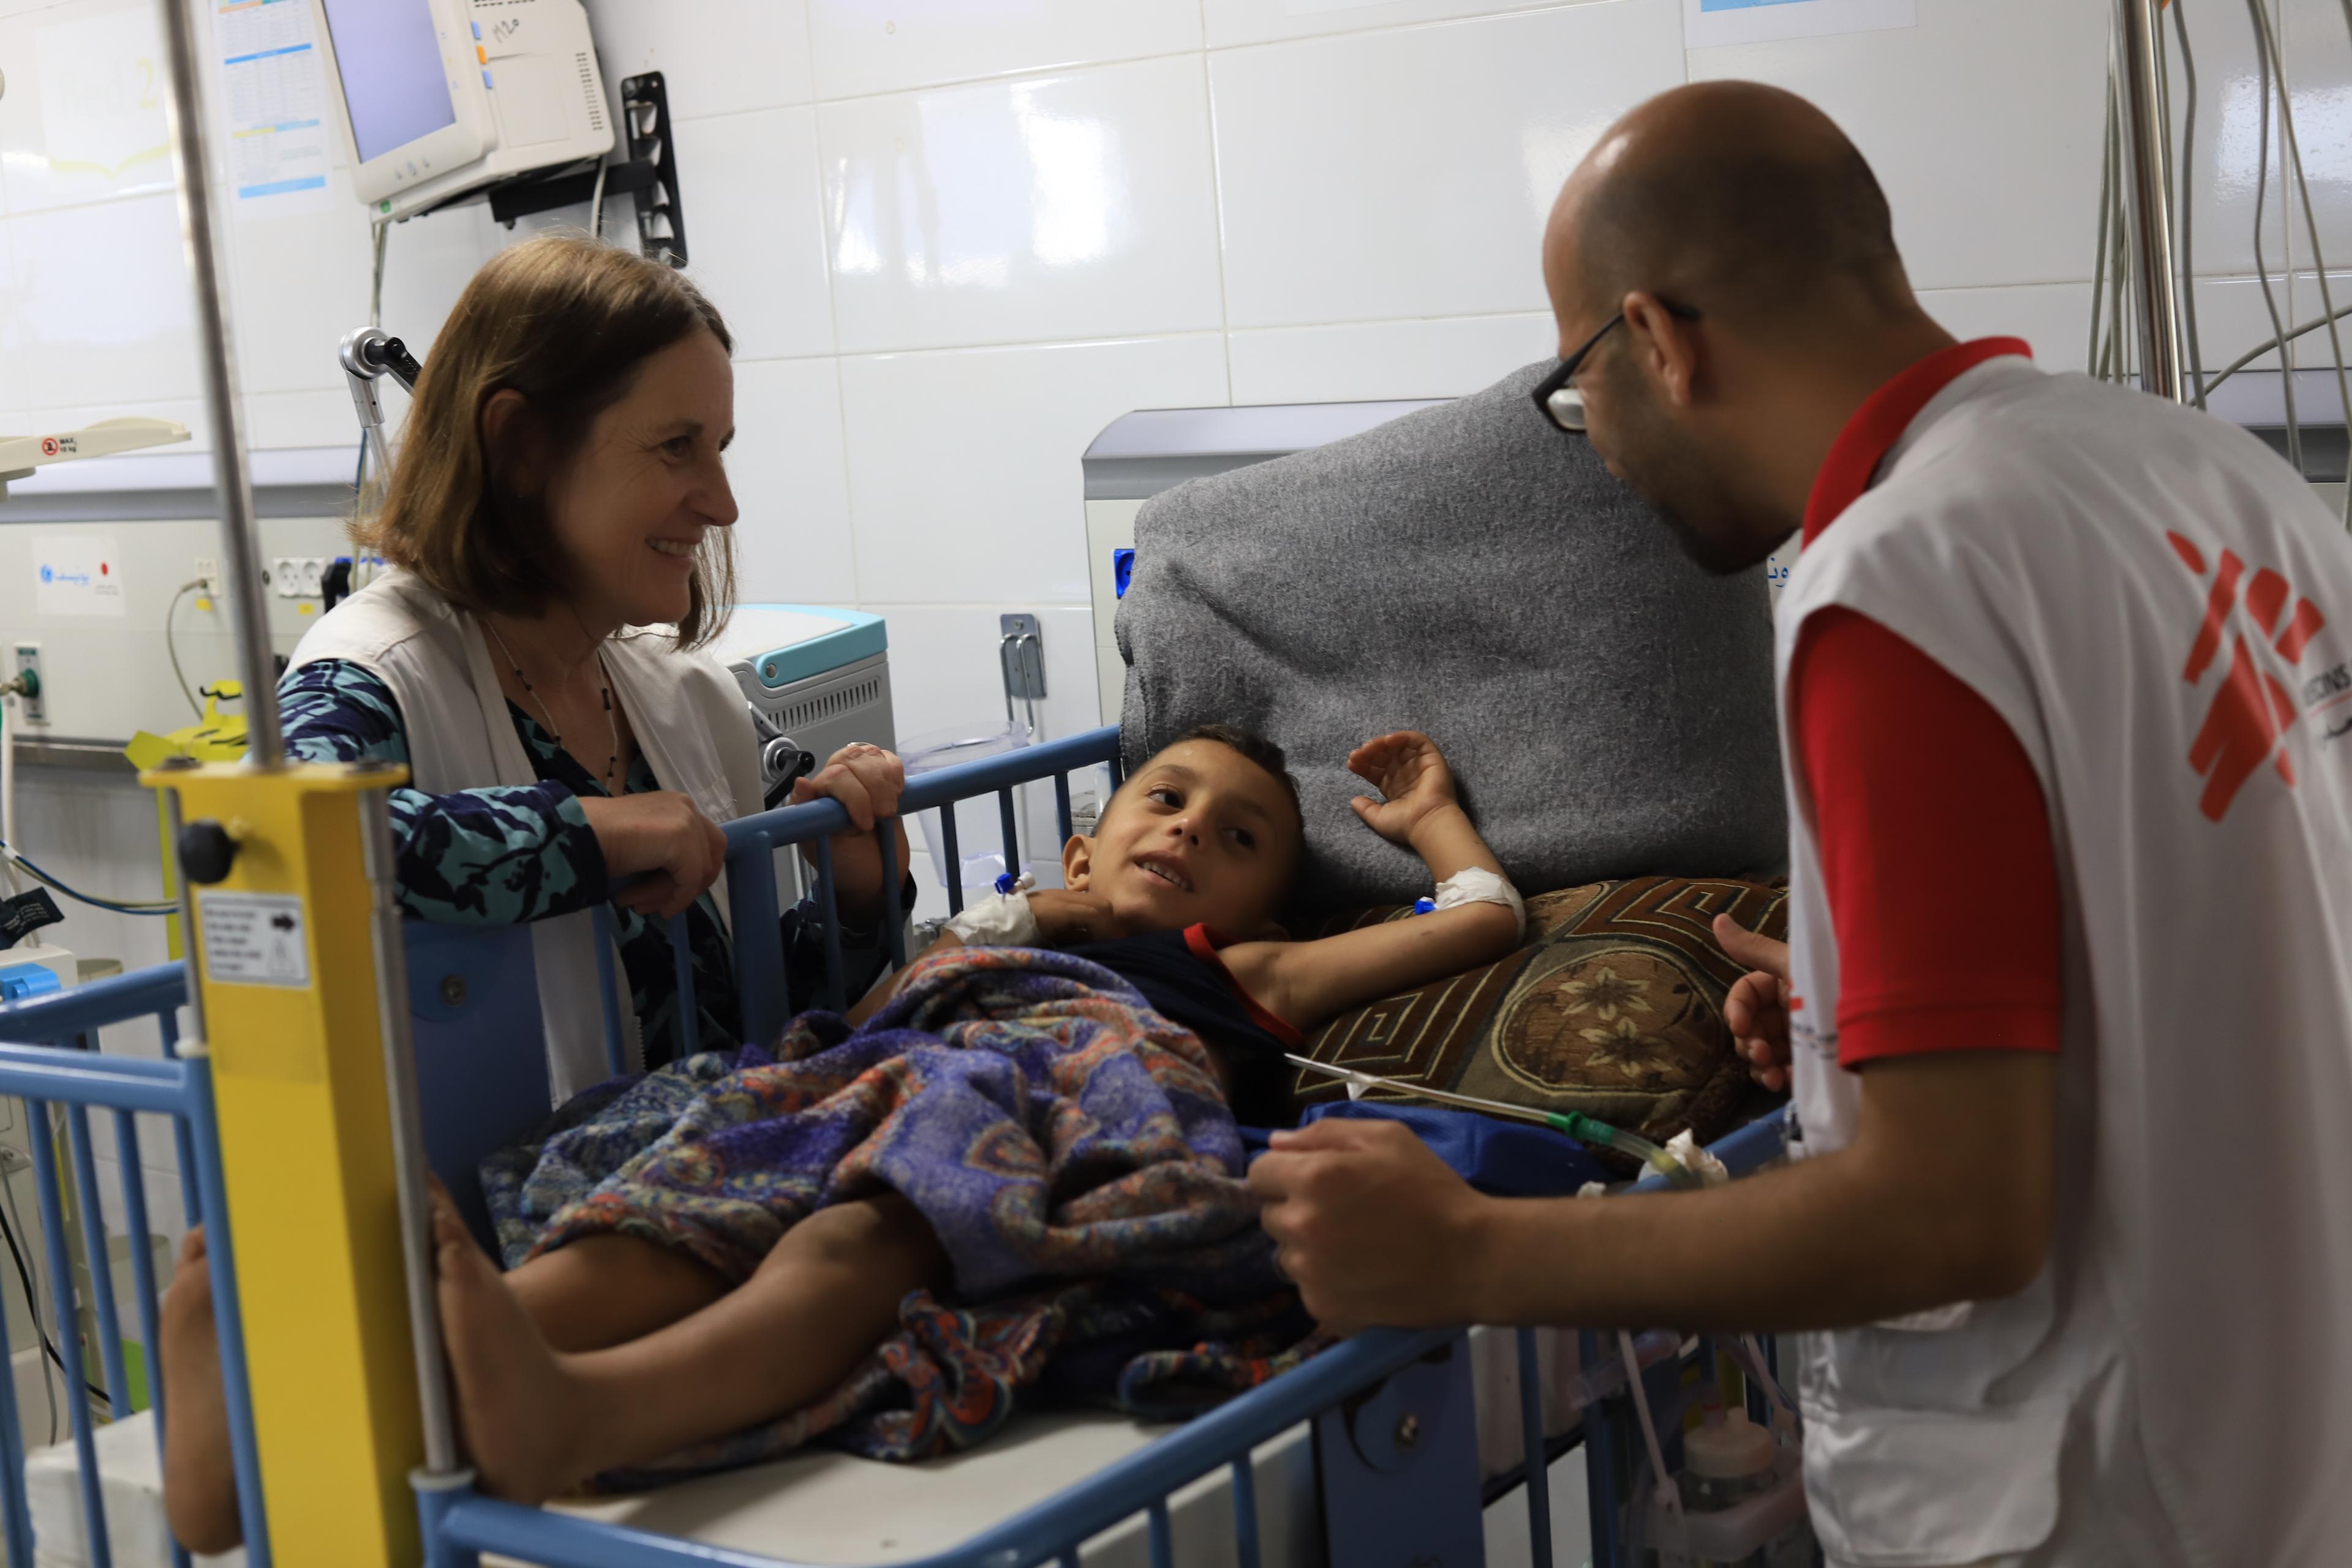 Mohammad Shihada, infirmier superviseur, et Joanne Perry, référente médicale du projet à Gaza, s'occupent d'un patient qui reçoit des soins après avoir été blessé à Gaza. ©Mariam Abu Dagga/MSF 